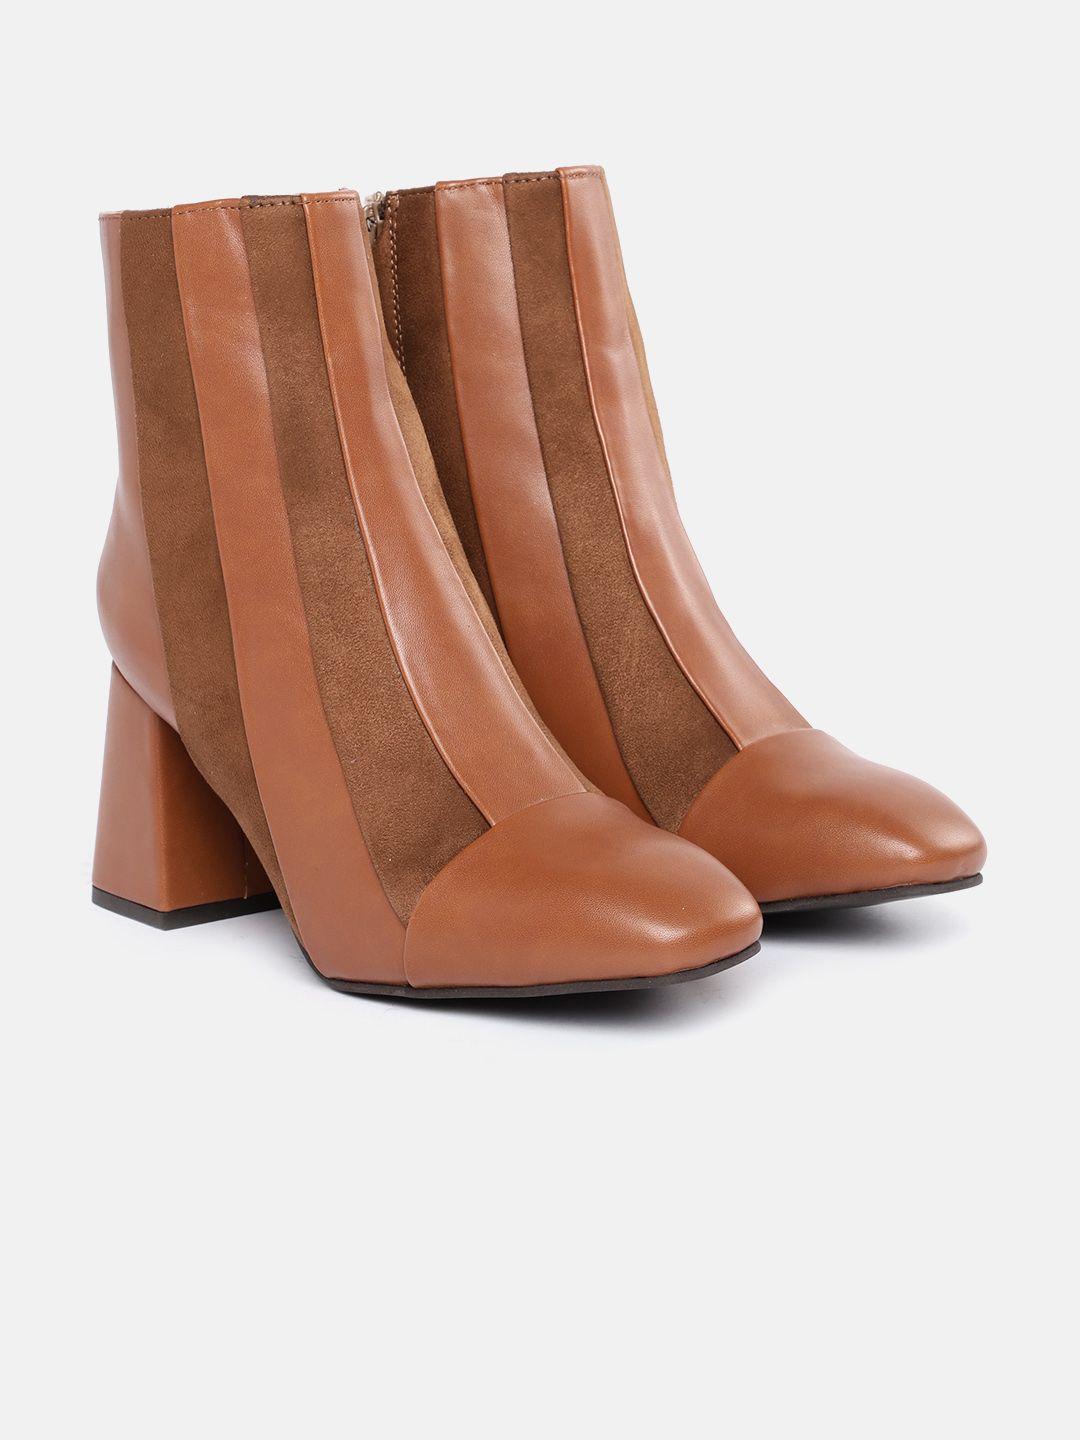 corsica women tan brown striped mid-top block heel regular boots